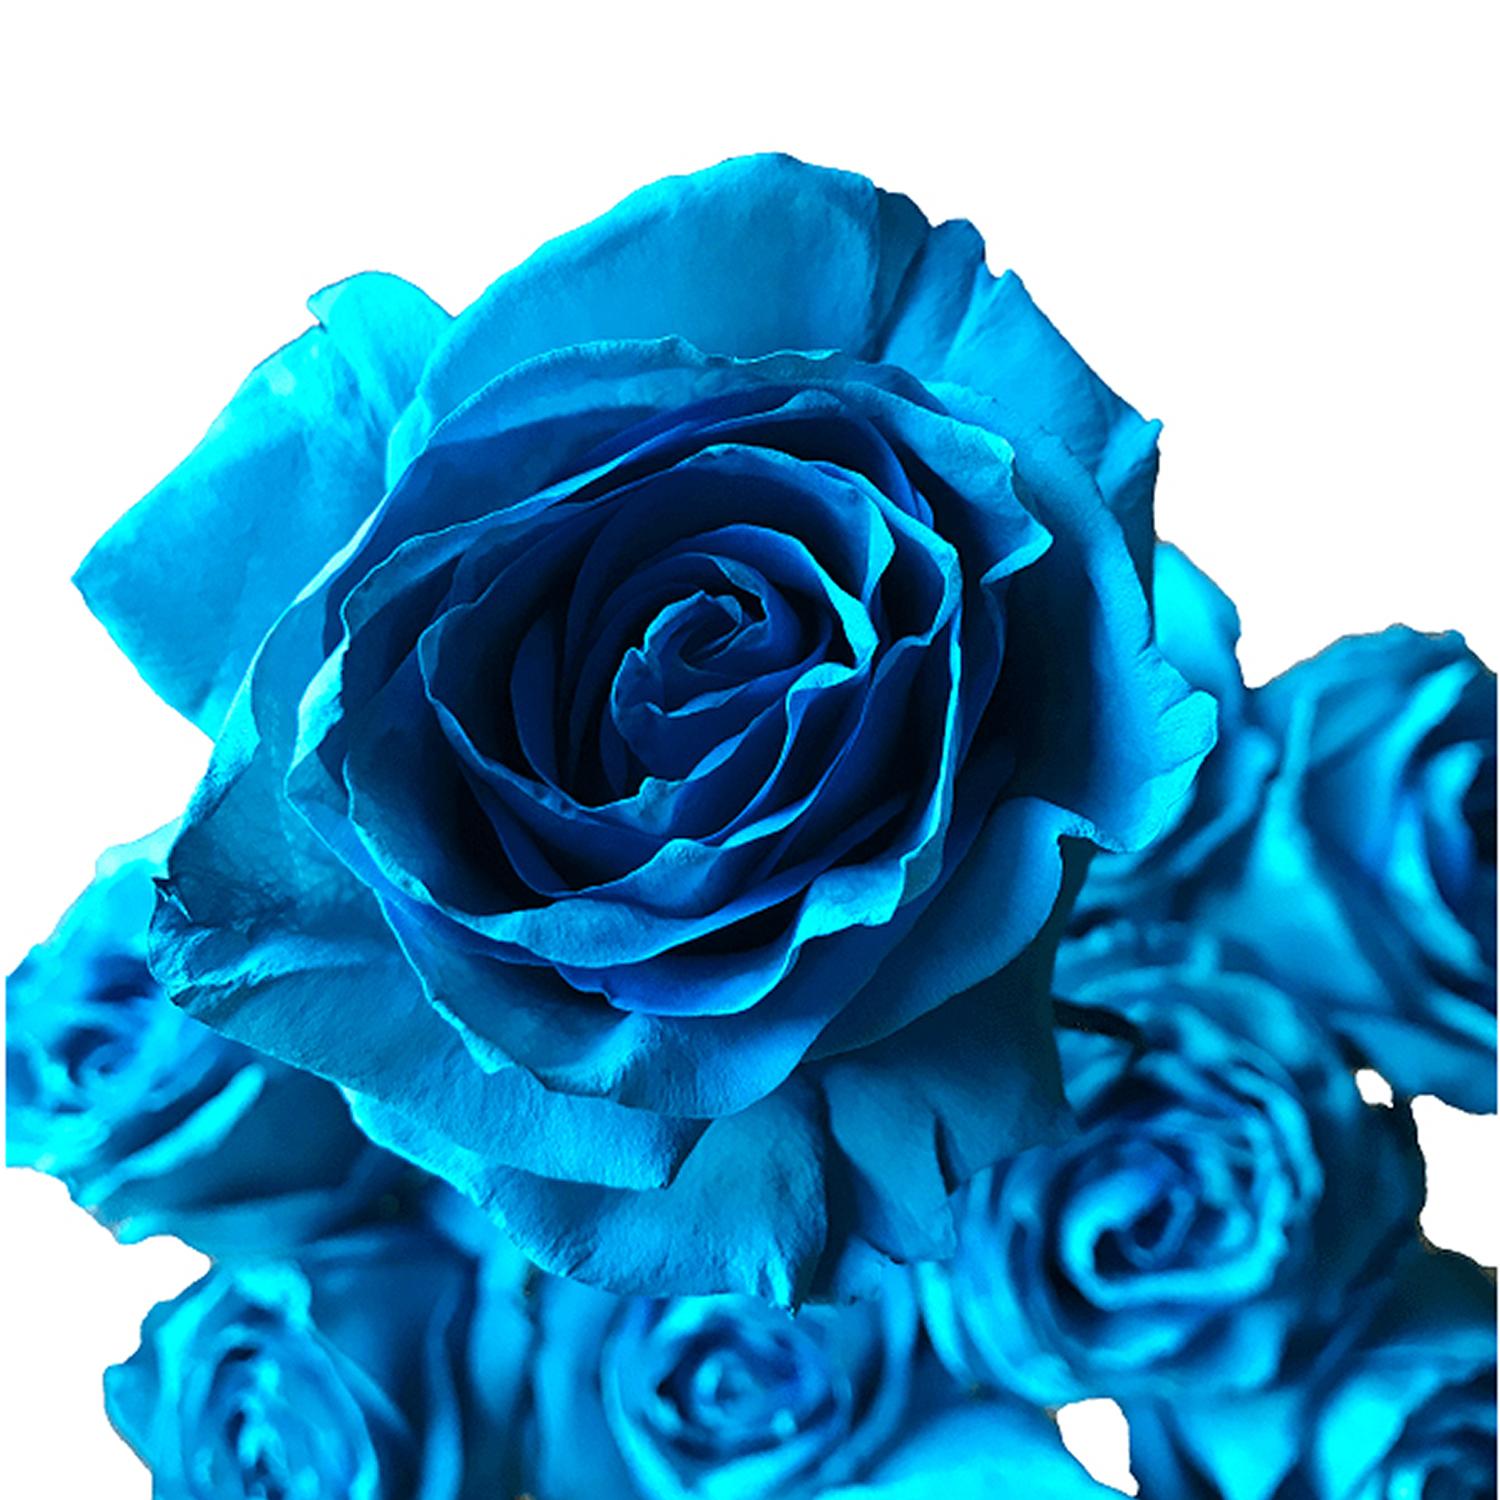 PARADISE LARGE ROSE FLOWER TURQUOISE BLUE